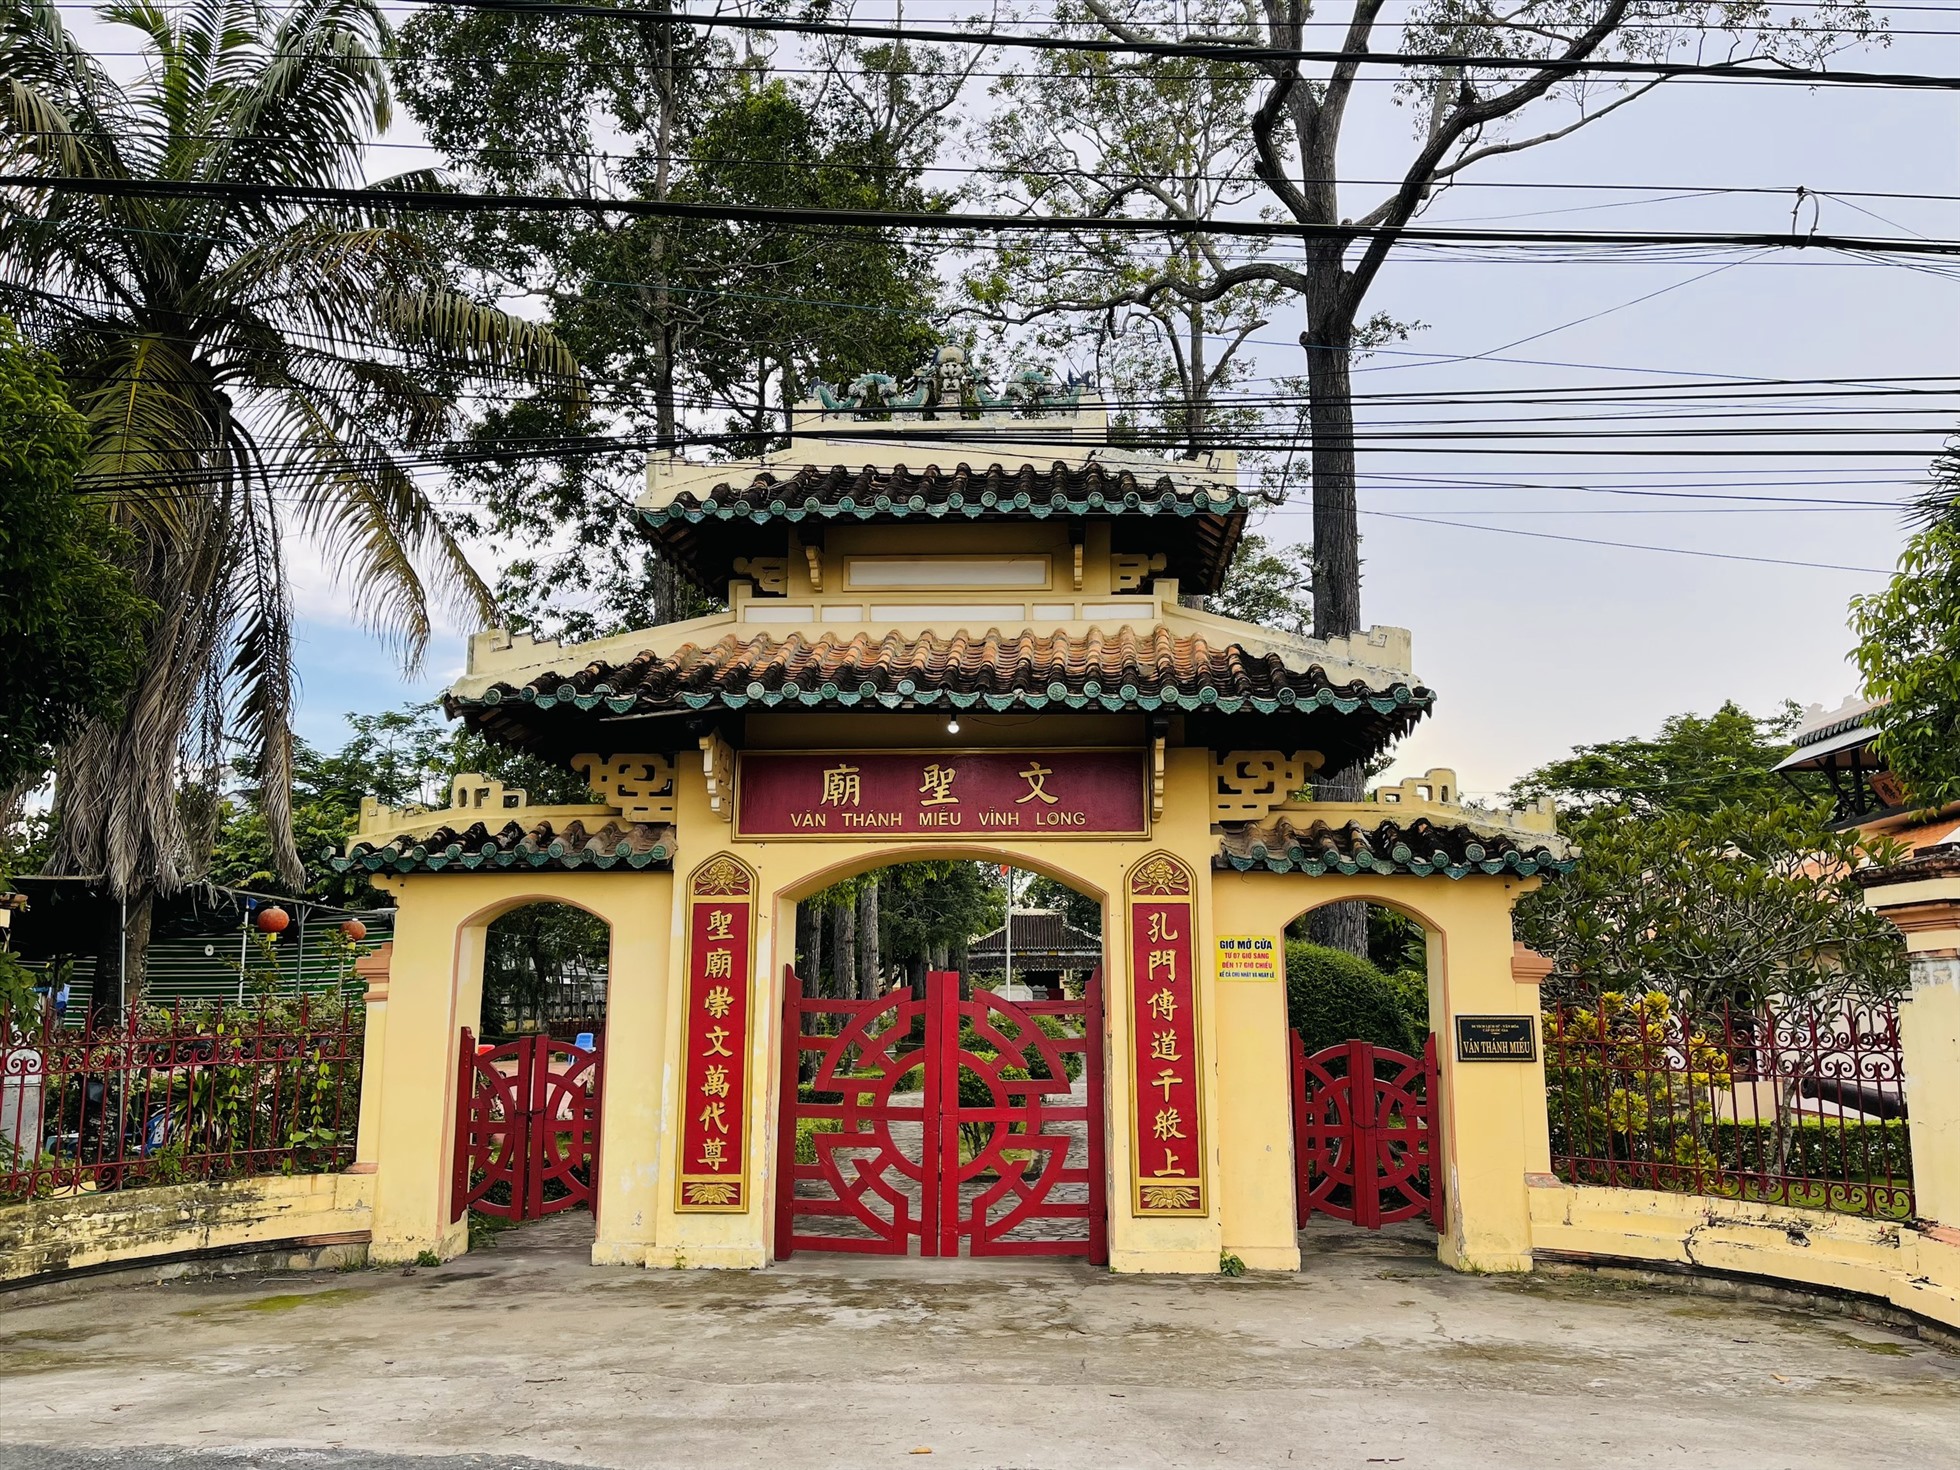 Cổng tam quan của Văn Thánh Miếu Vĩnh Long. Ảnh: Hương Mai